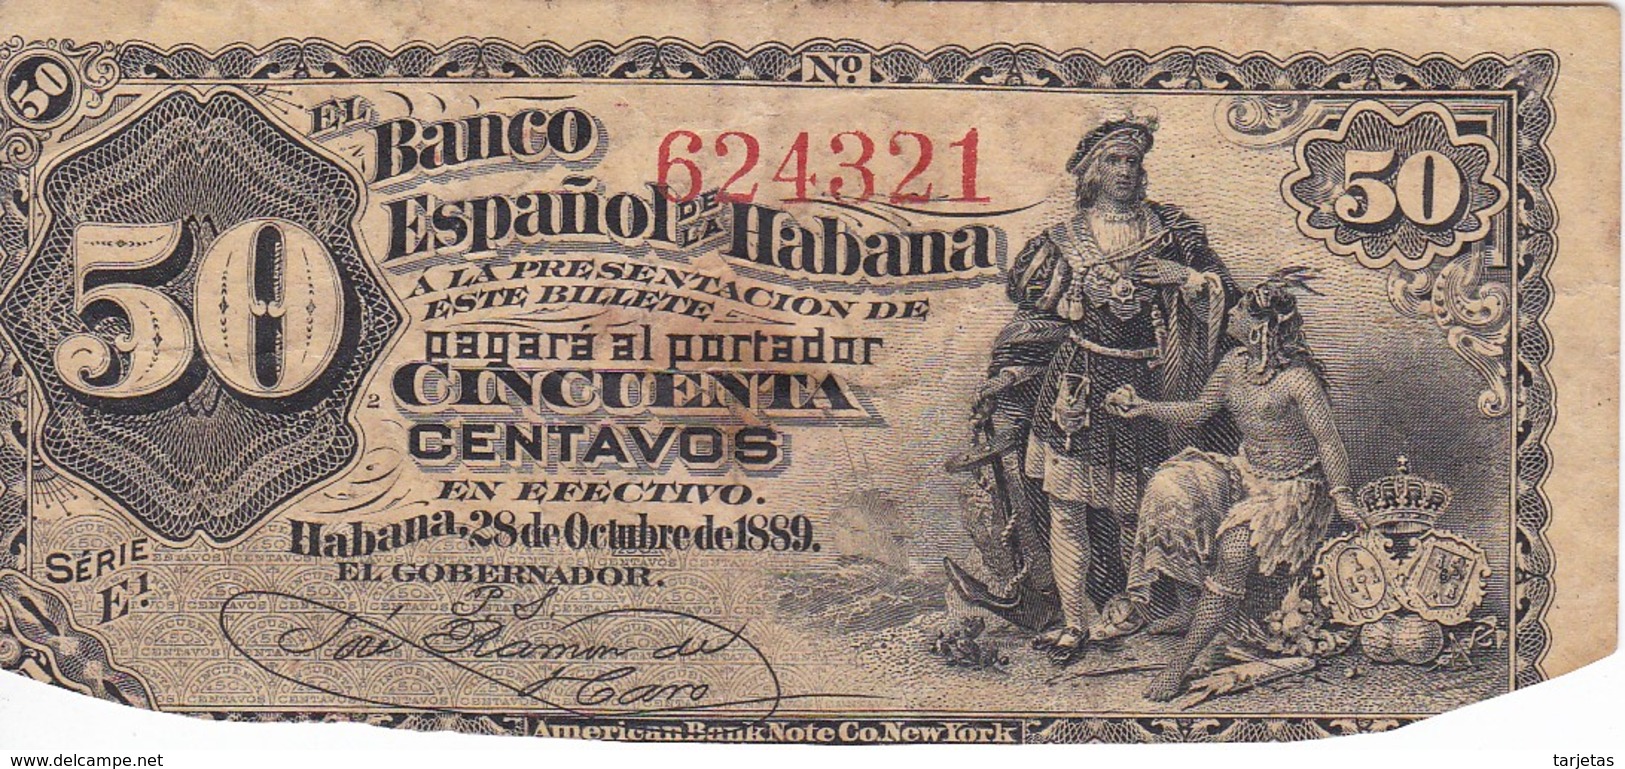 BILLETE DE CUBA DE 50 CENTAVOS DEL AÑO 1889 DEL BANCO ESPAÑOL DE LA HABANA (BANKNOTE) MUY RARO - Cuba